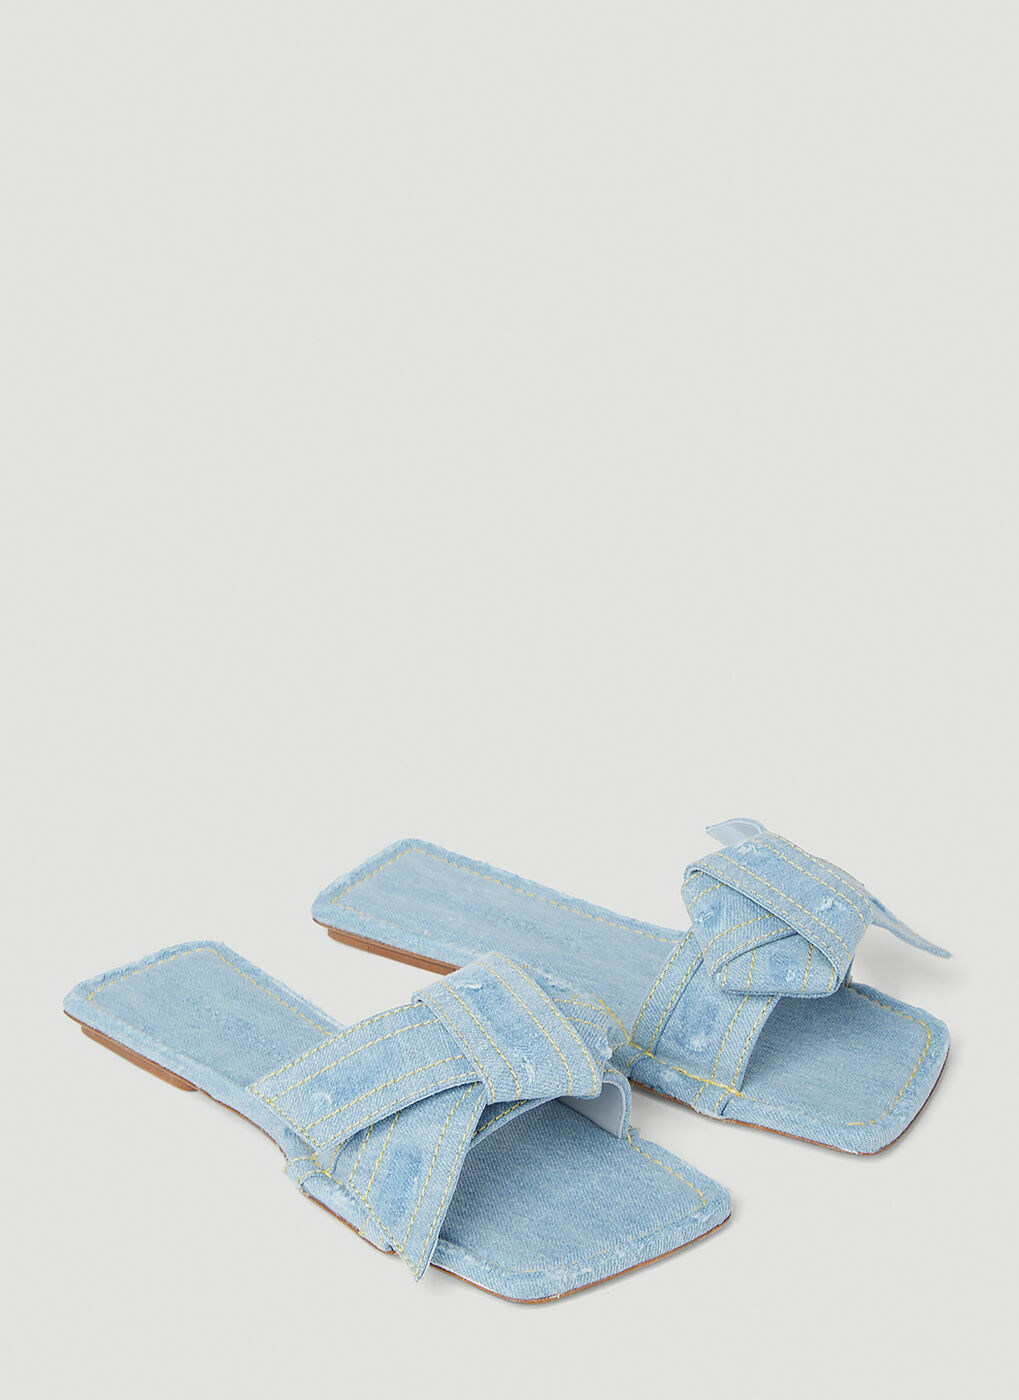 Acne Studios - Musubi Denim Sandals in Light Blue Acne Studios